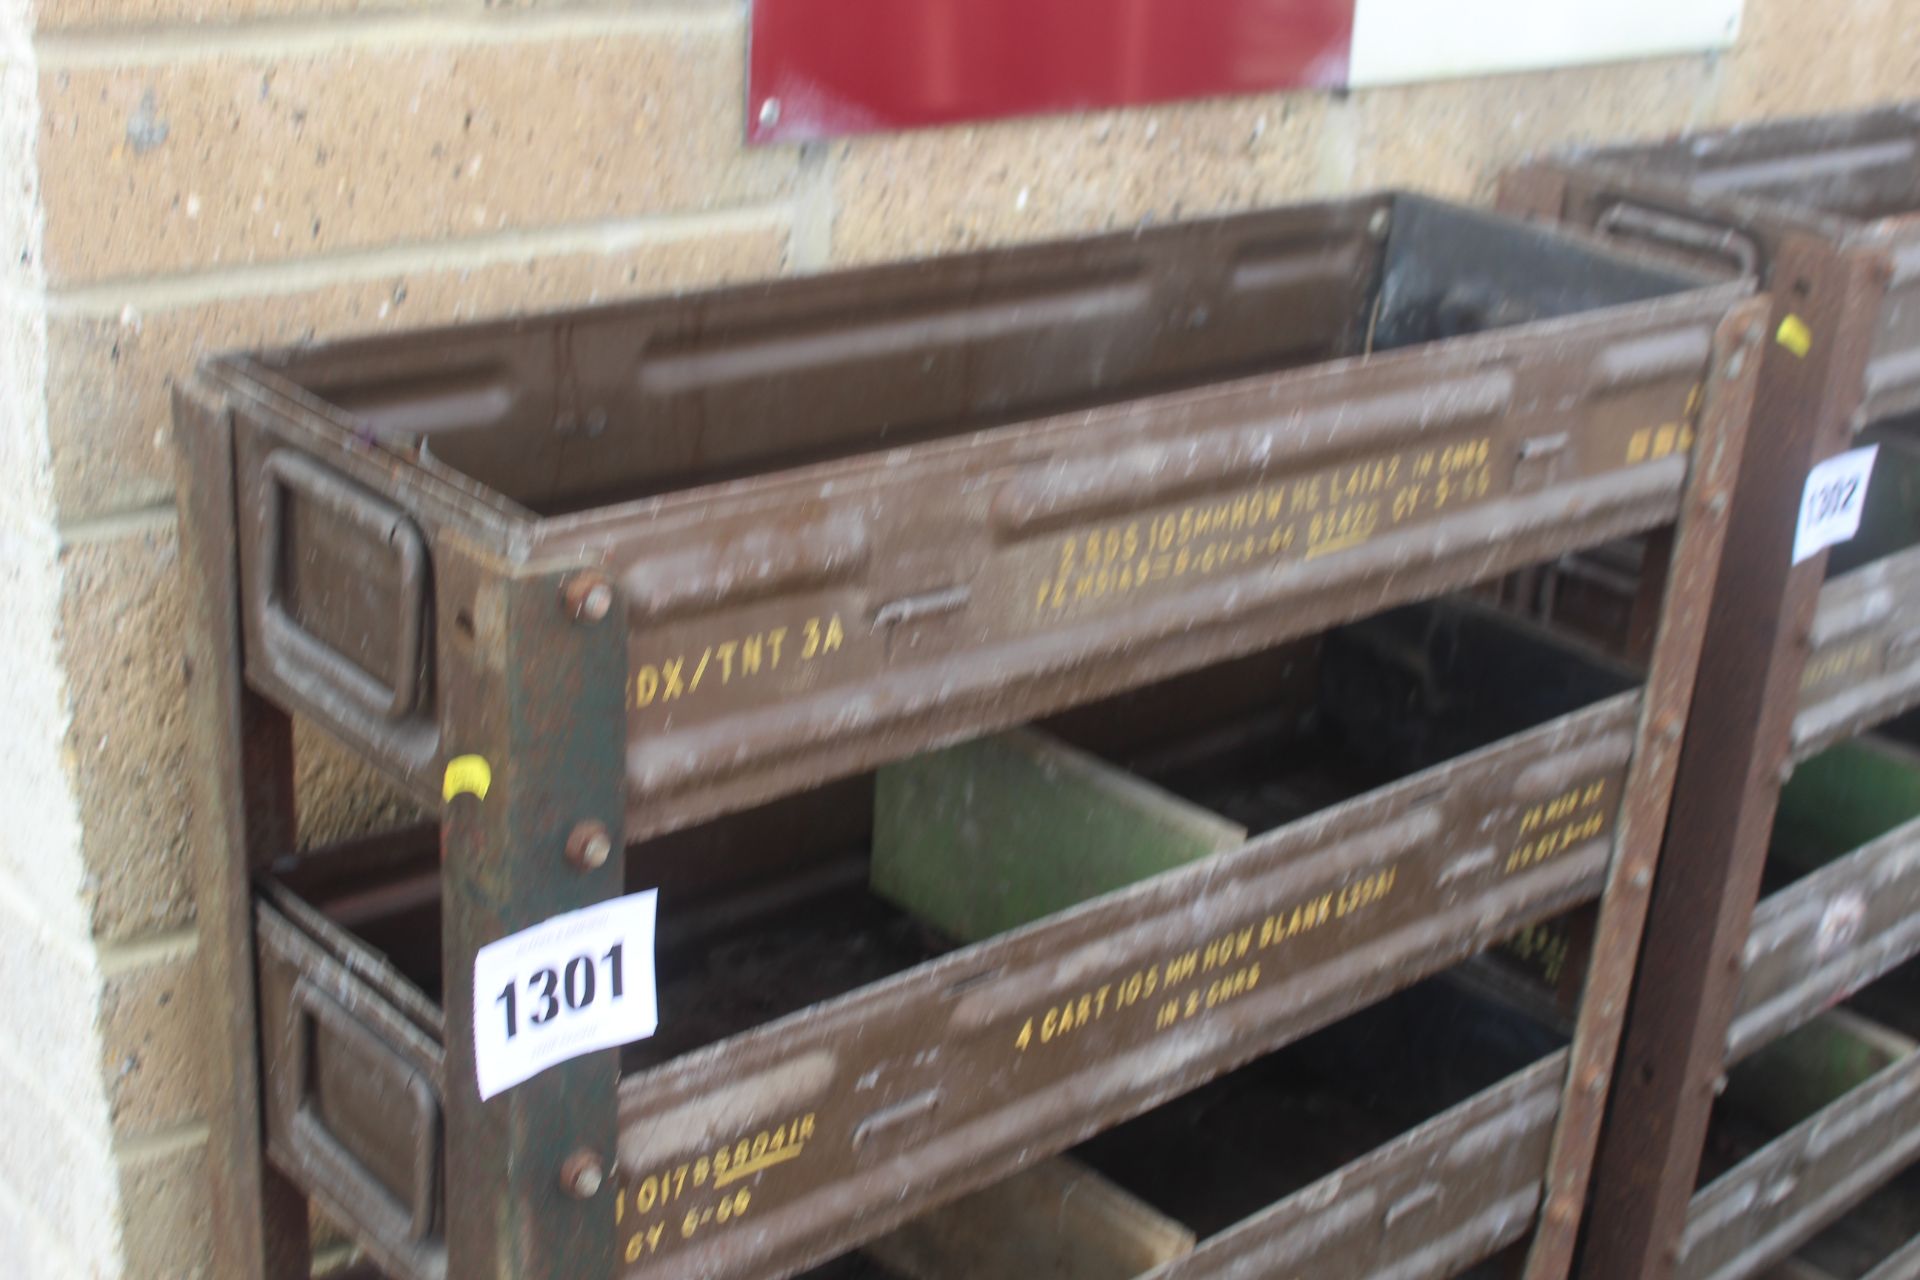 Workshop storage unit made from ammunition boxes. - Bild 2 aus 3